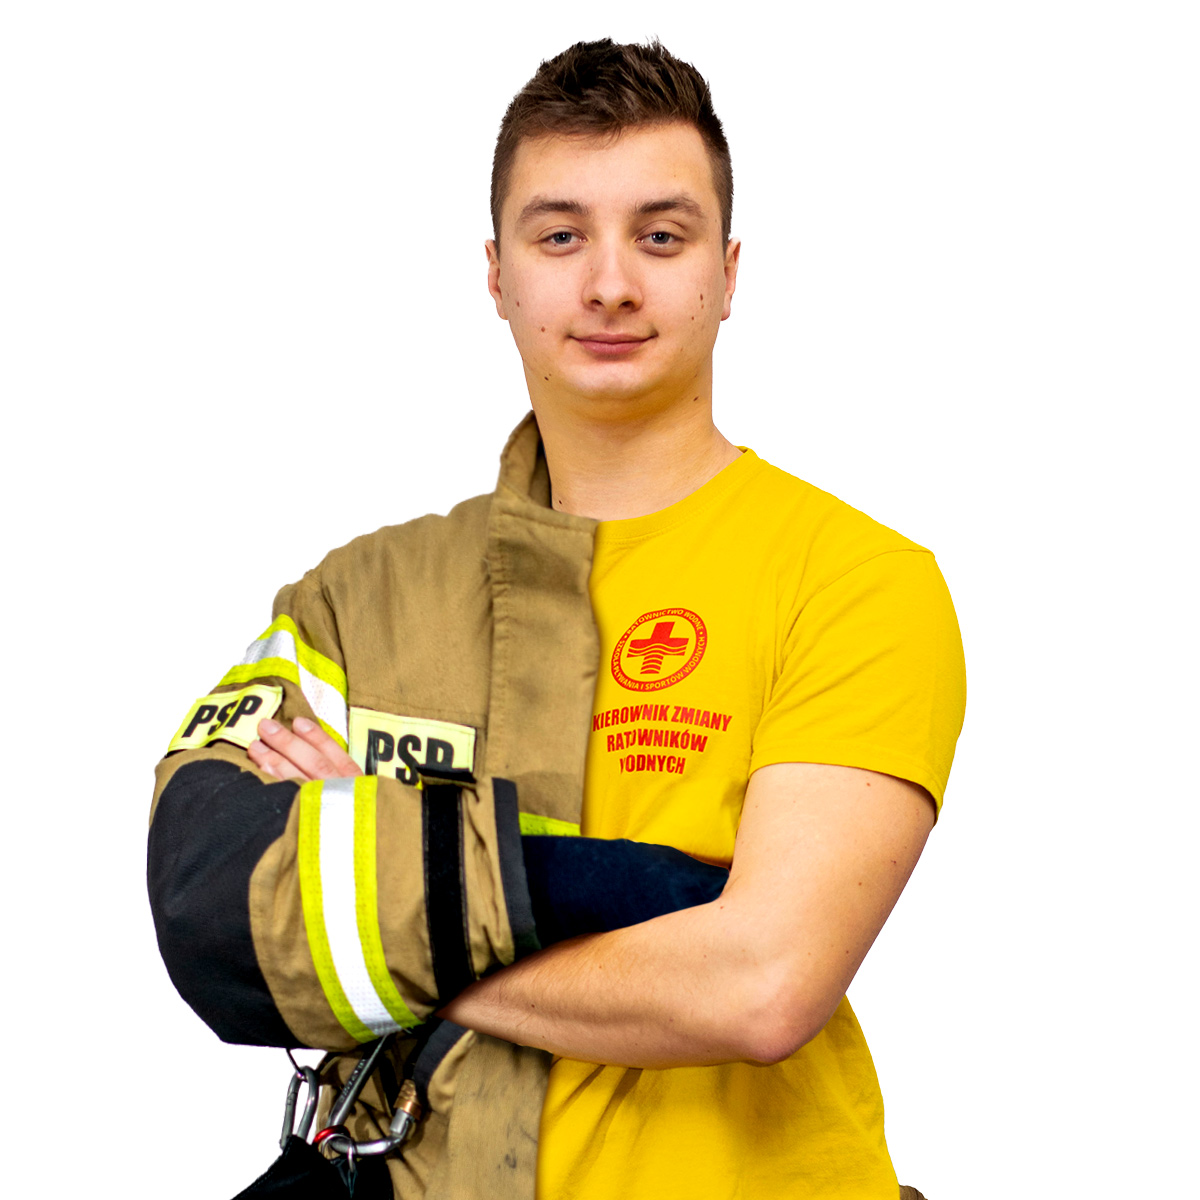 Instruktor szkoleń ochrony przeciwpożarowej i ewakuacji